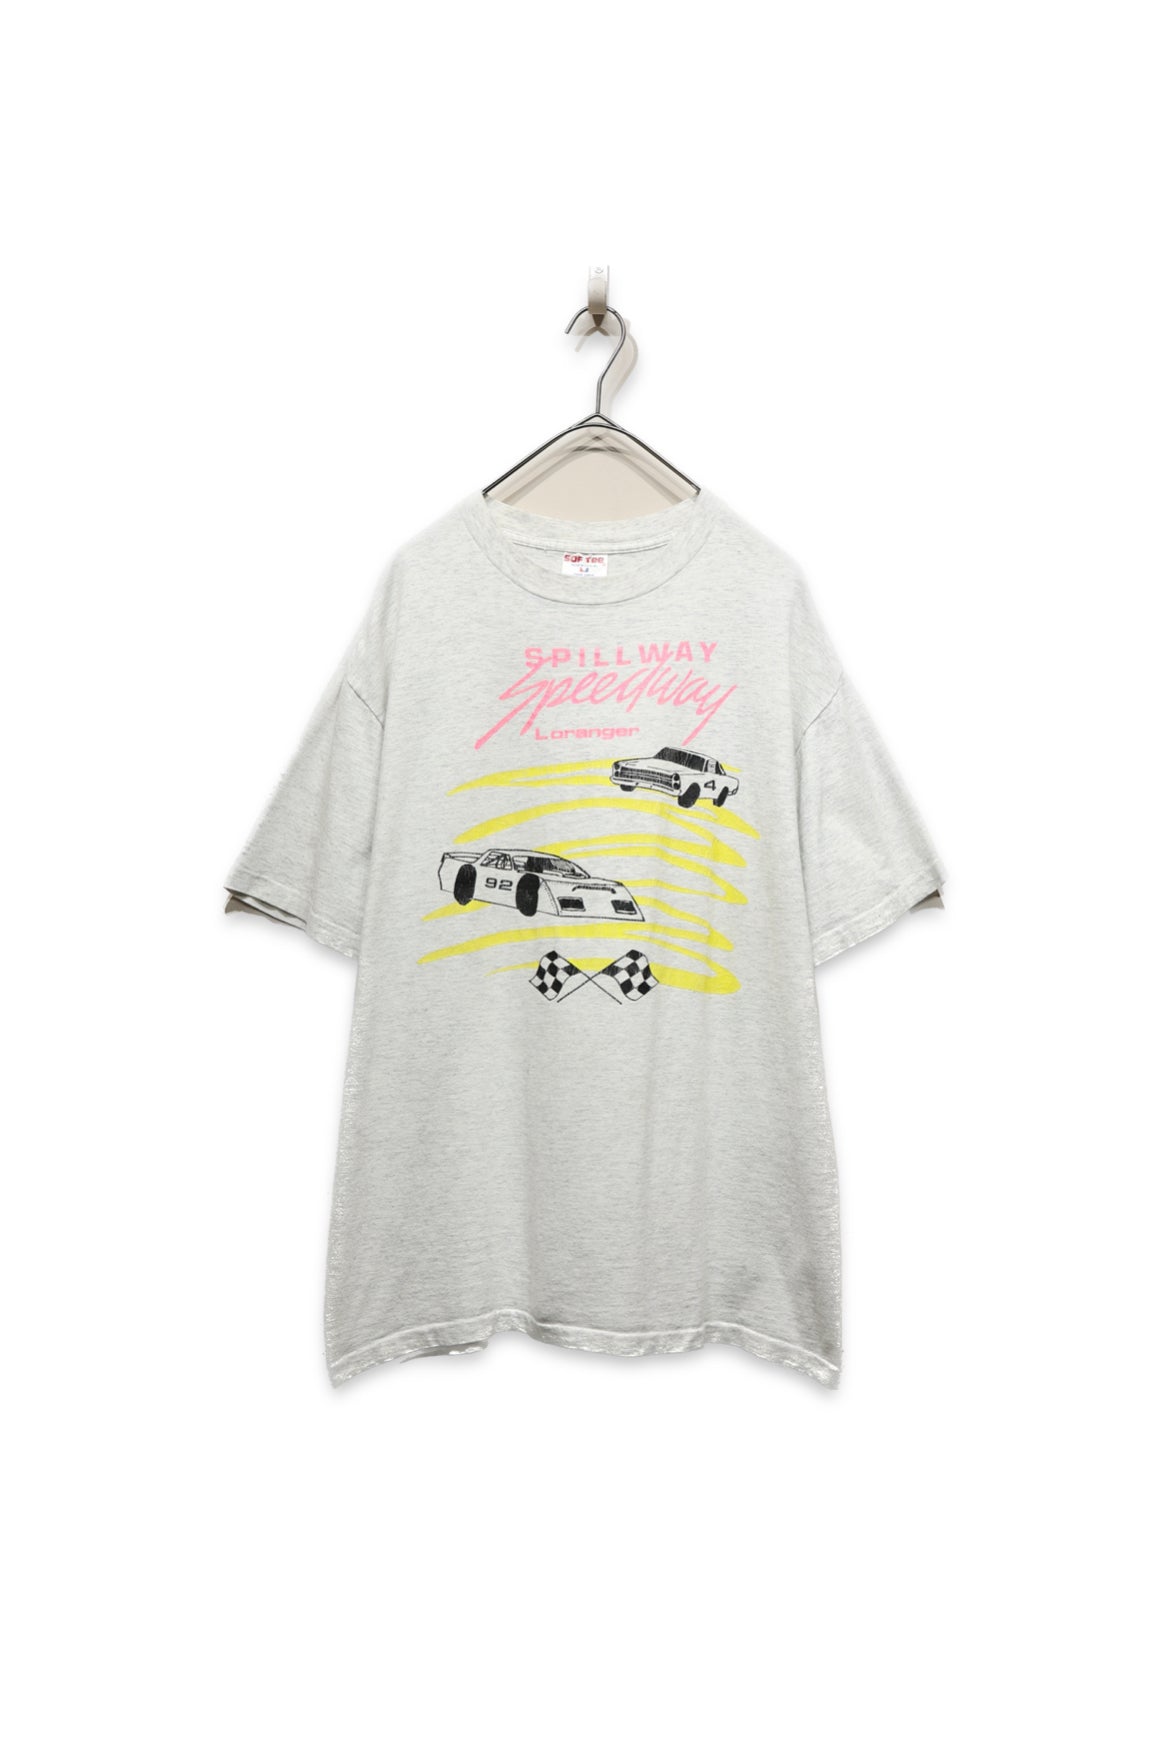 80-90's print t-shirt